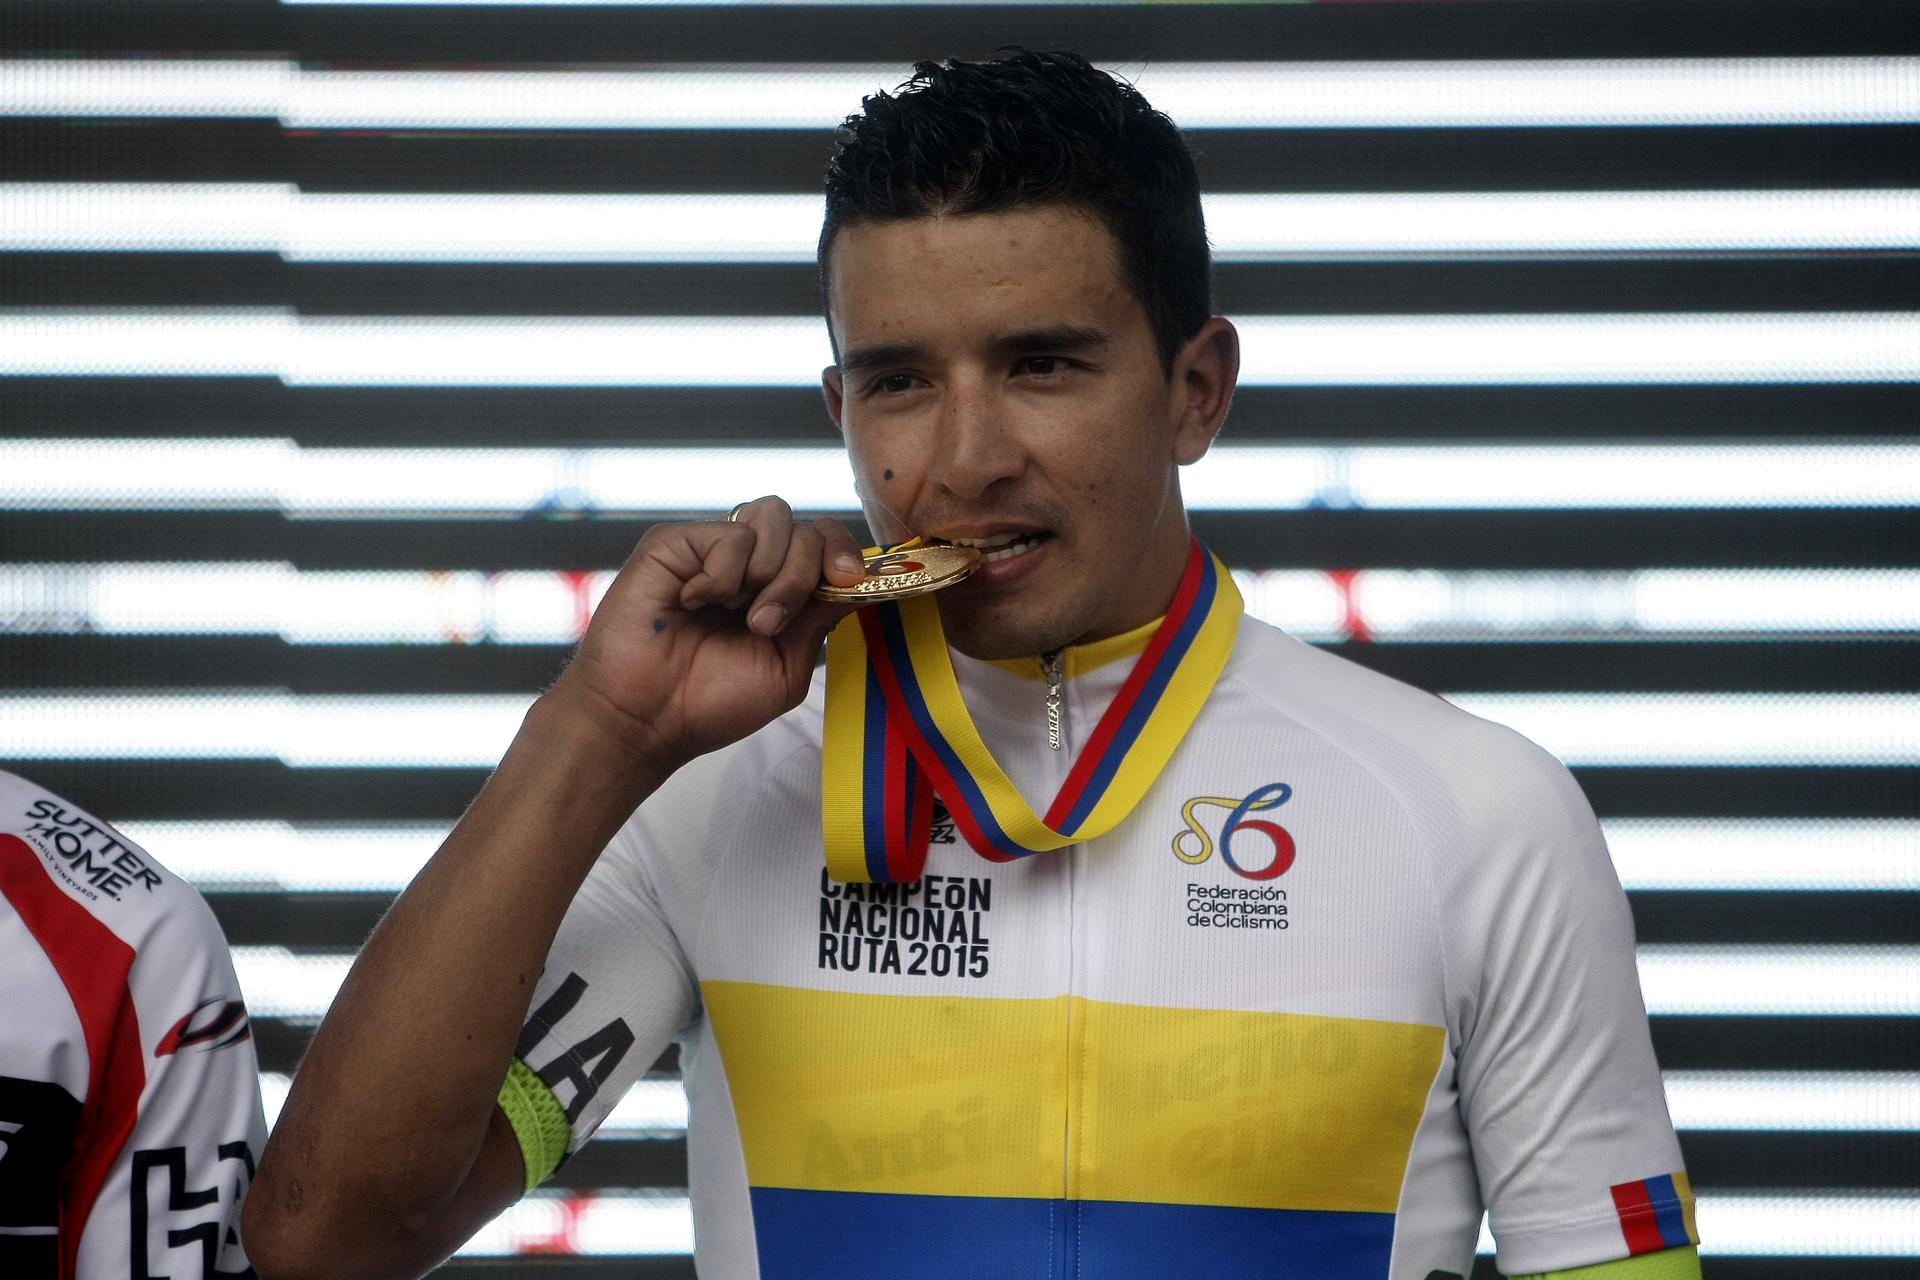 Fotografía de archivo en la que se registró al ciclista colombiano Robinson Chalapud, quien lidera la vuelta a Ecuador. EFE/Luis Noriega